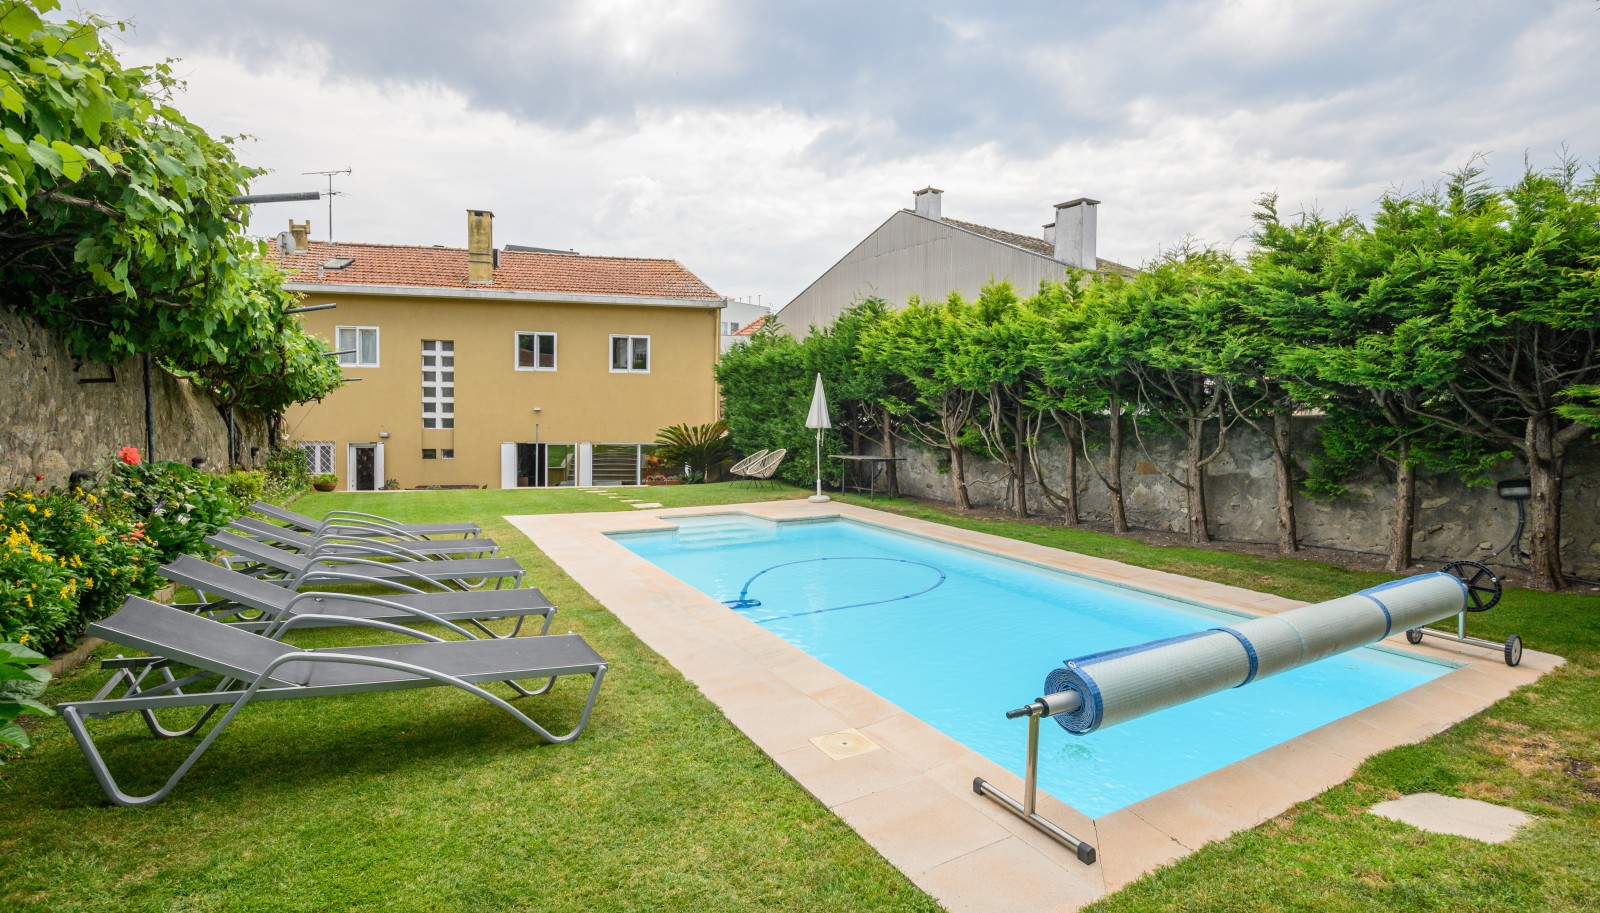 Villa mit Pool und Garten, zu verkaufen, in Serralves, Porto, Portugal_227434